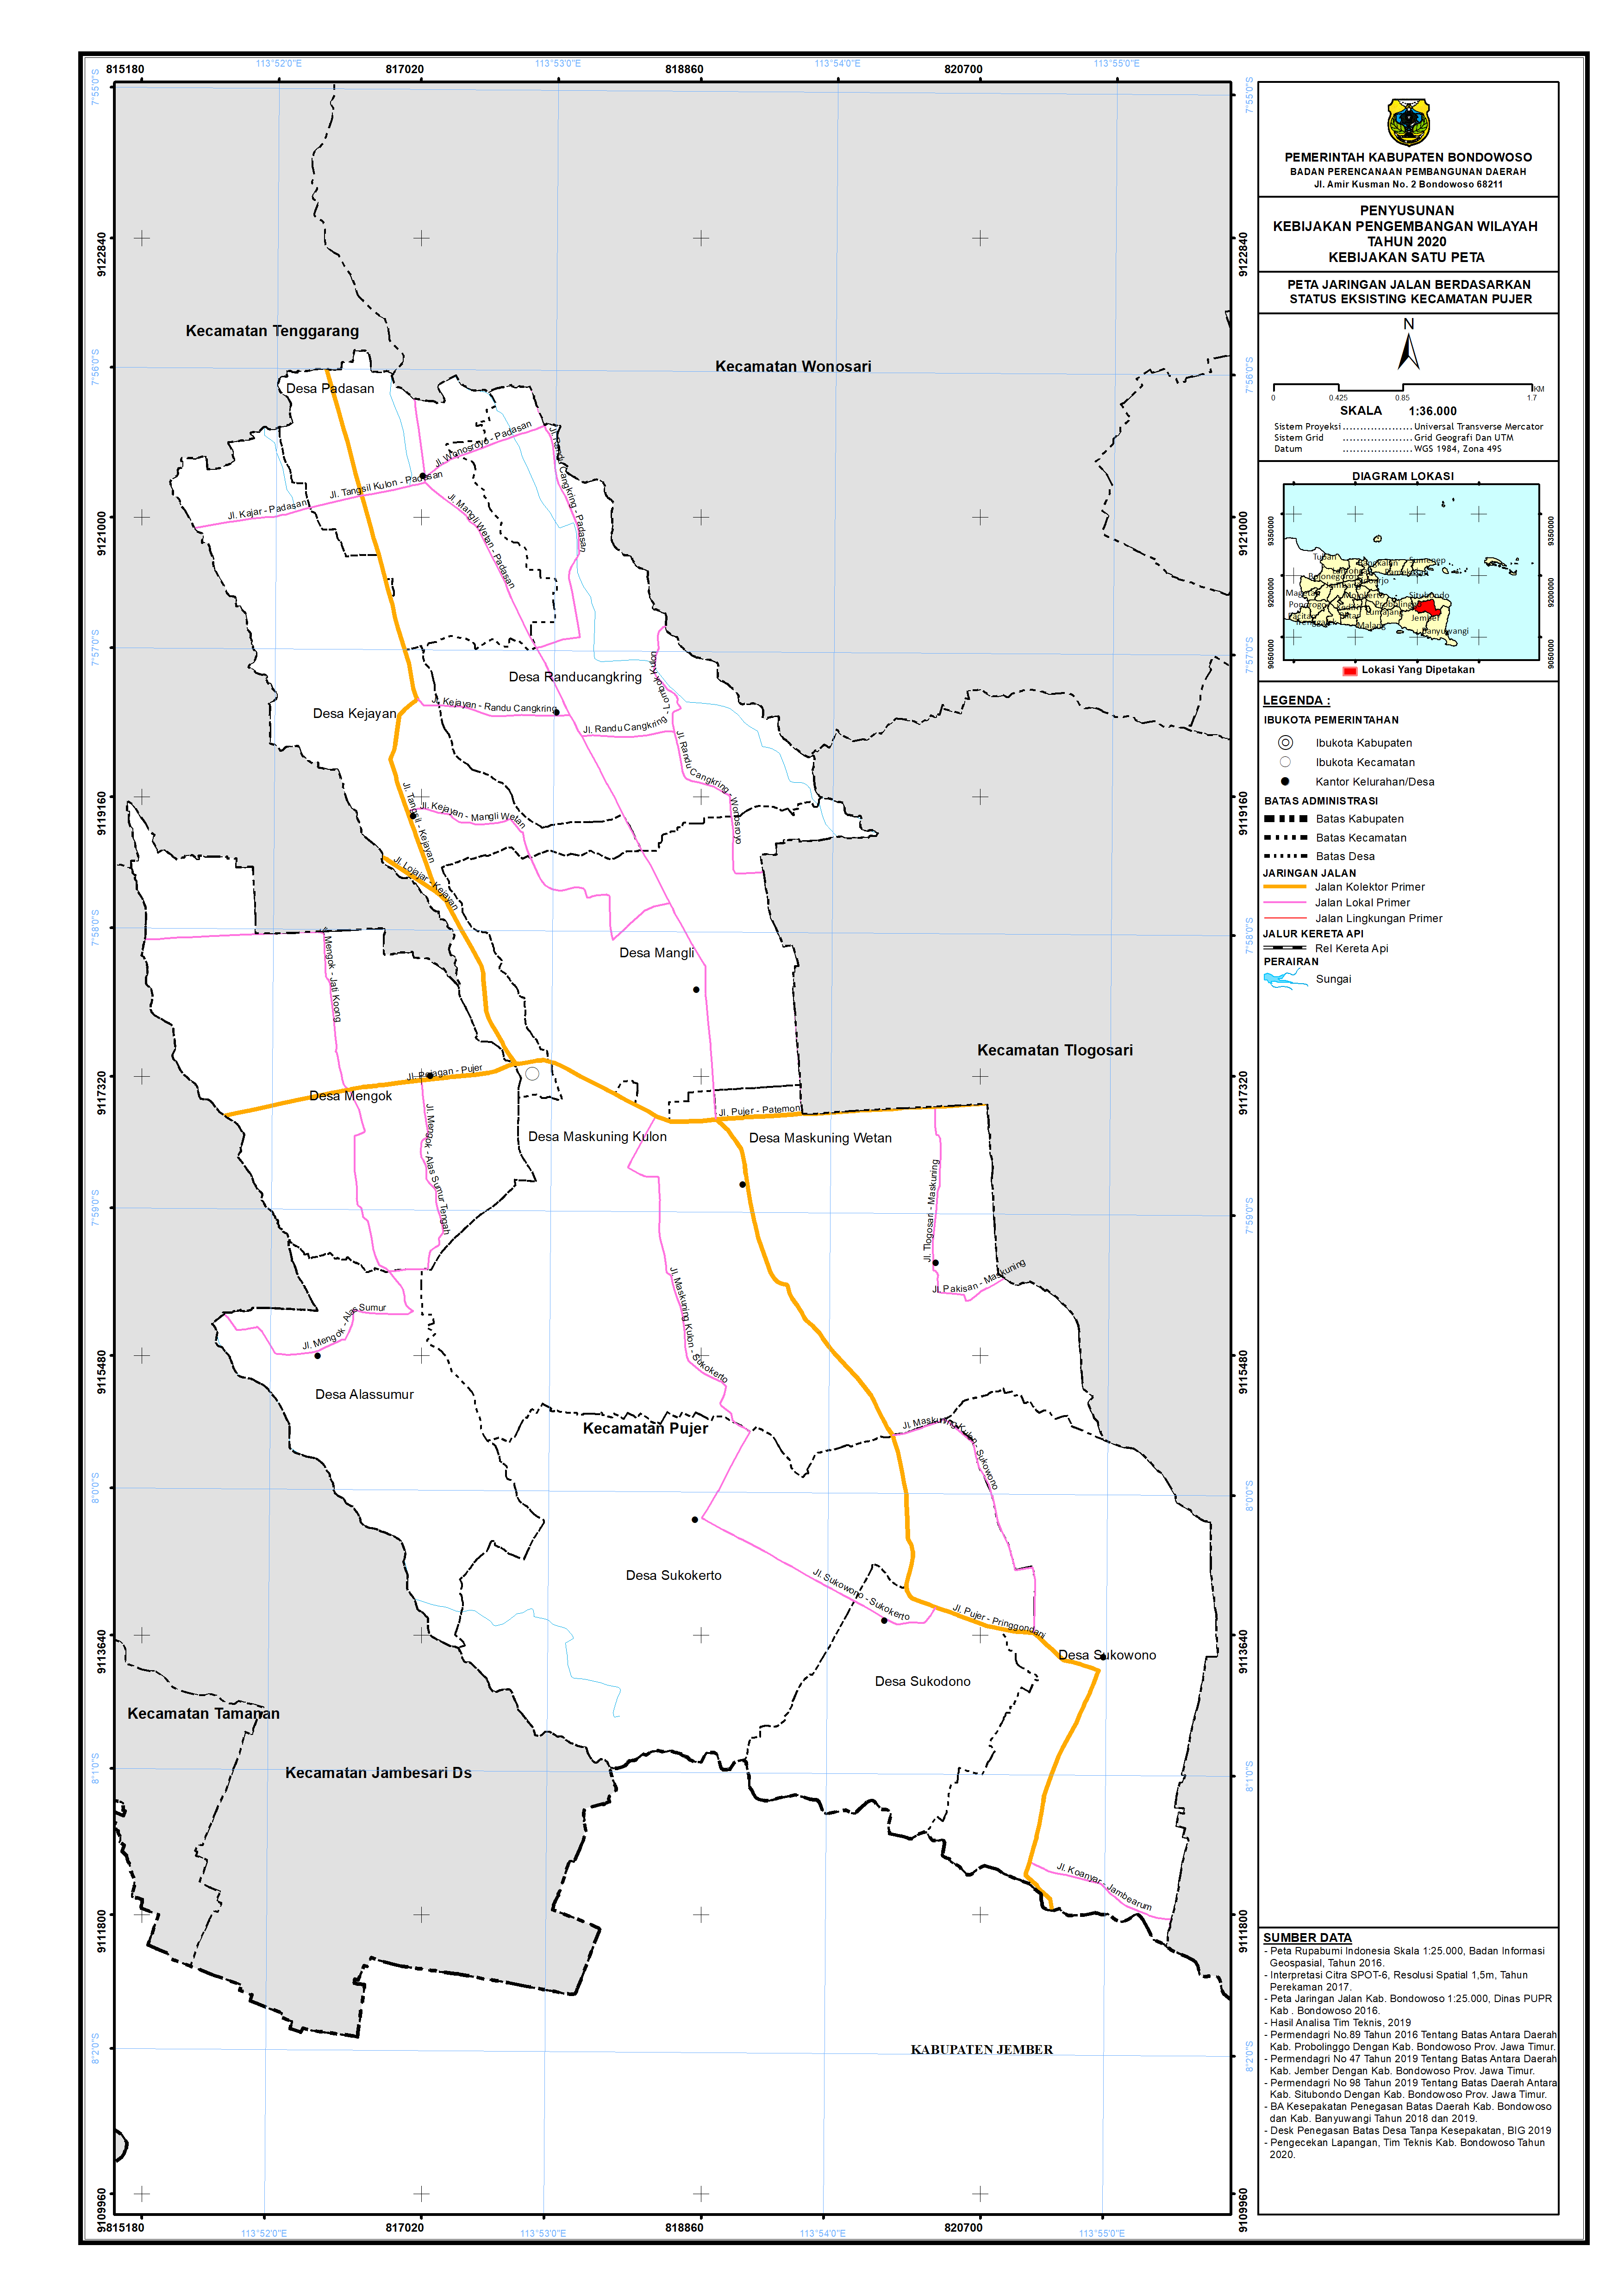 Peta Jaringan Jalan Berdasarkan Status Eksisting Kecamatan Pujer.png